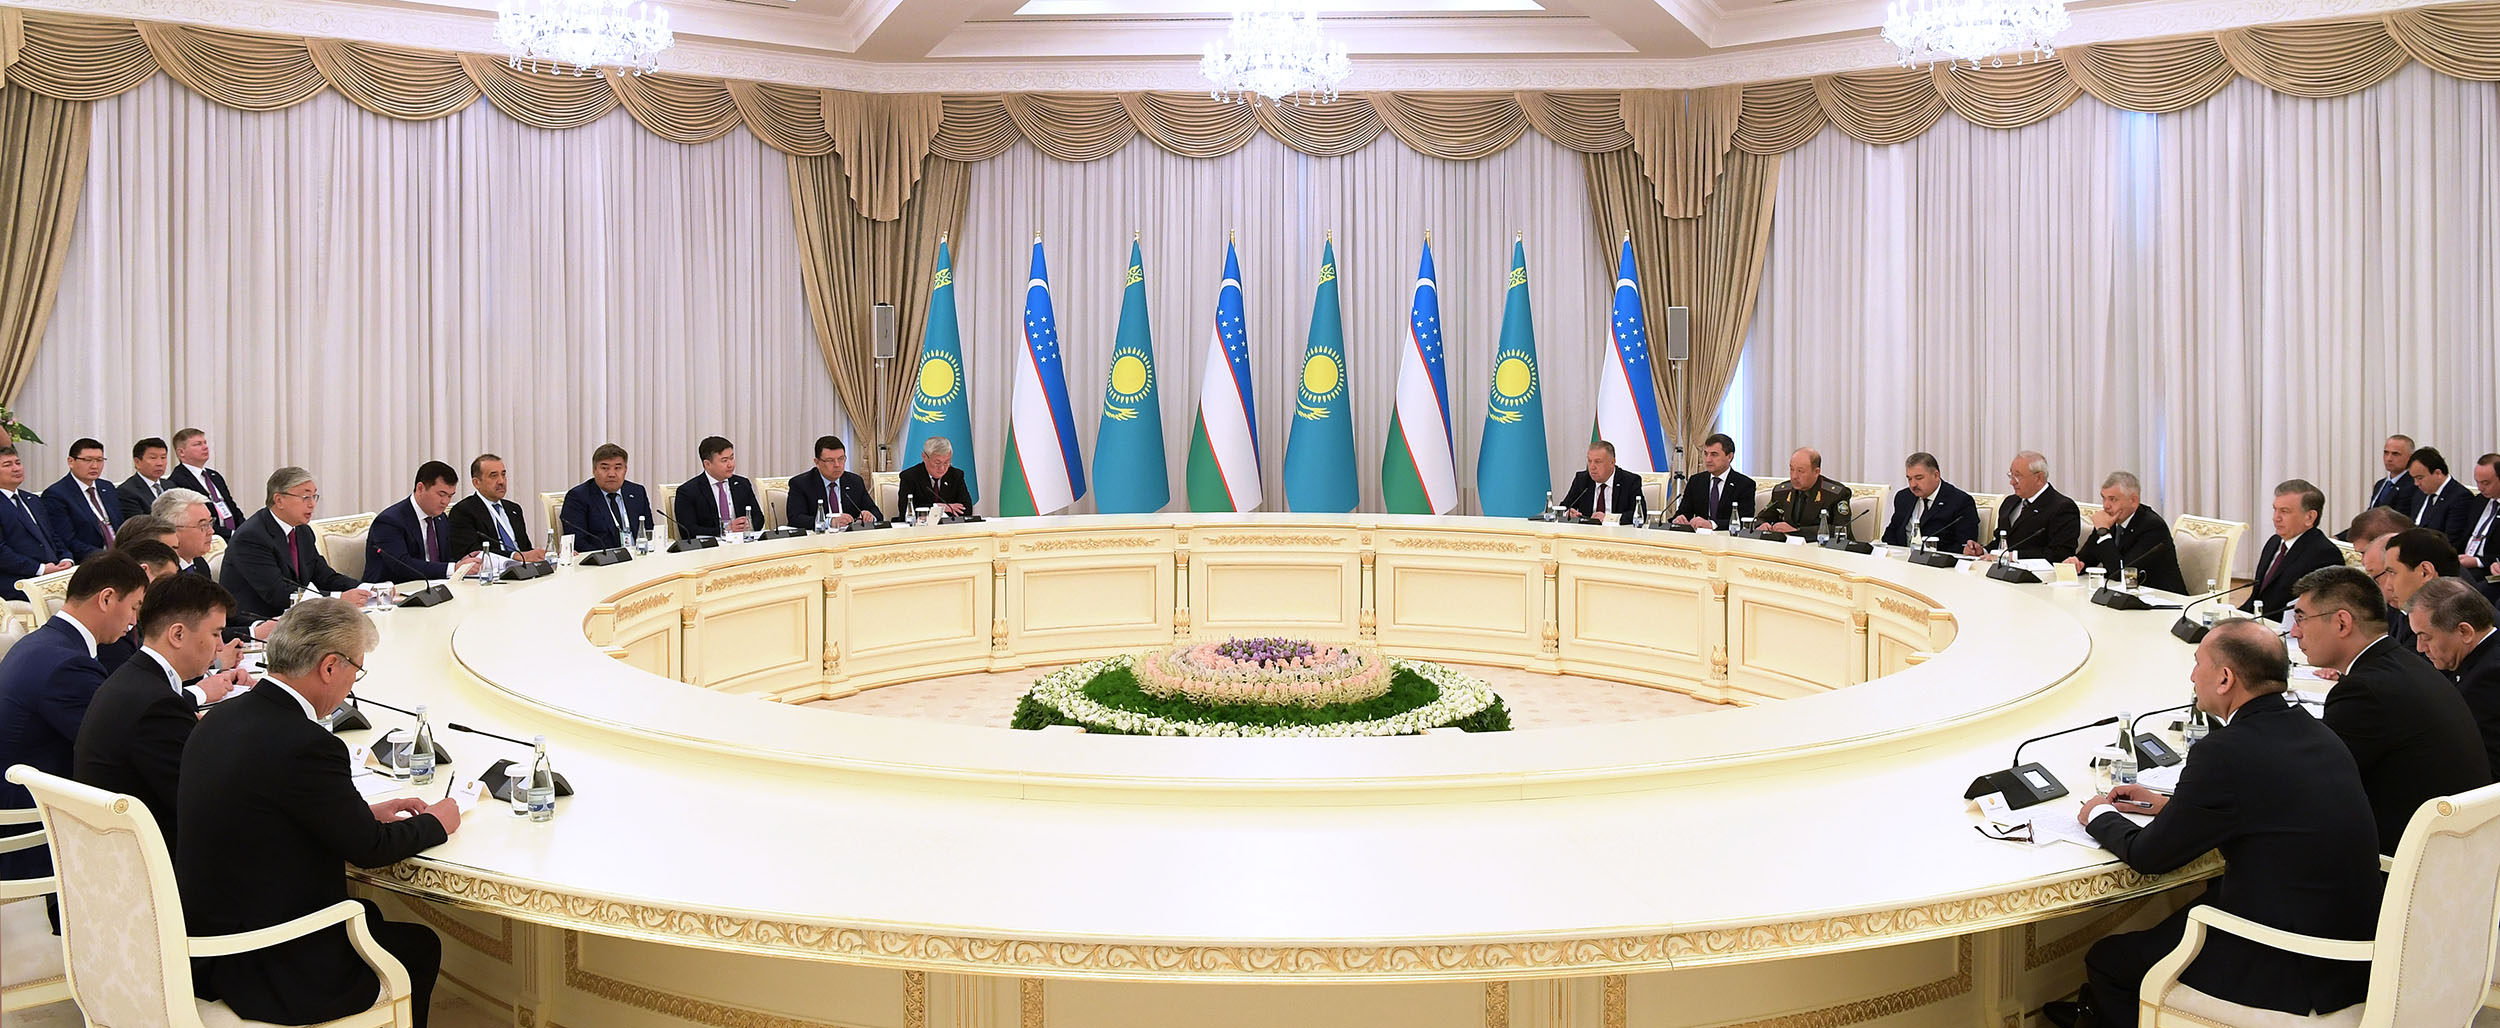 Началась торжественная церемония открытия Года Казахстана в Узбекистане